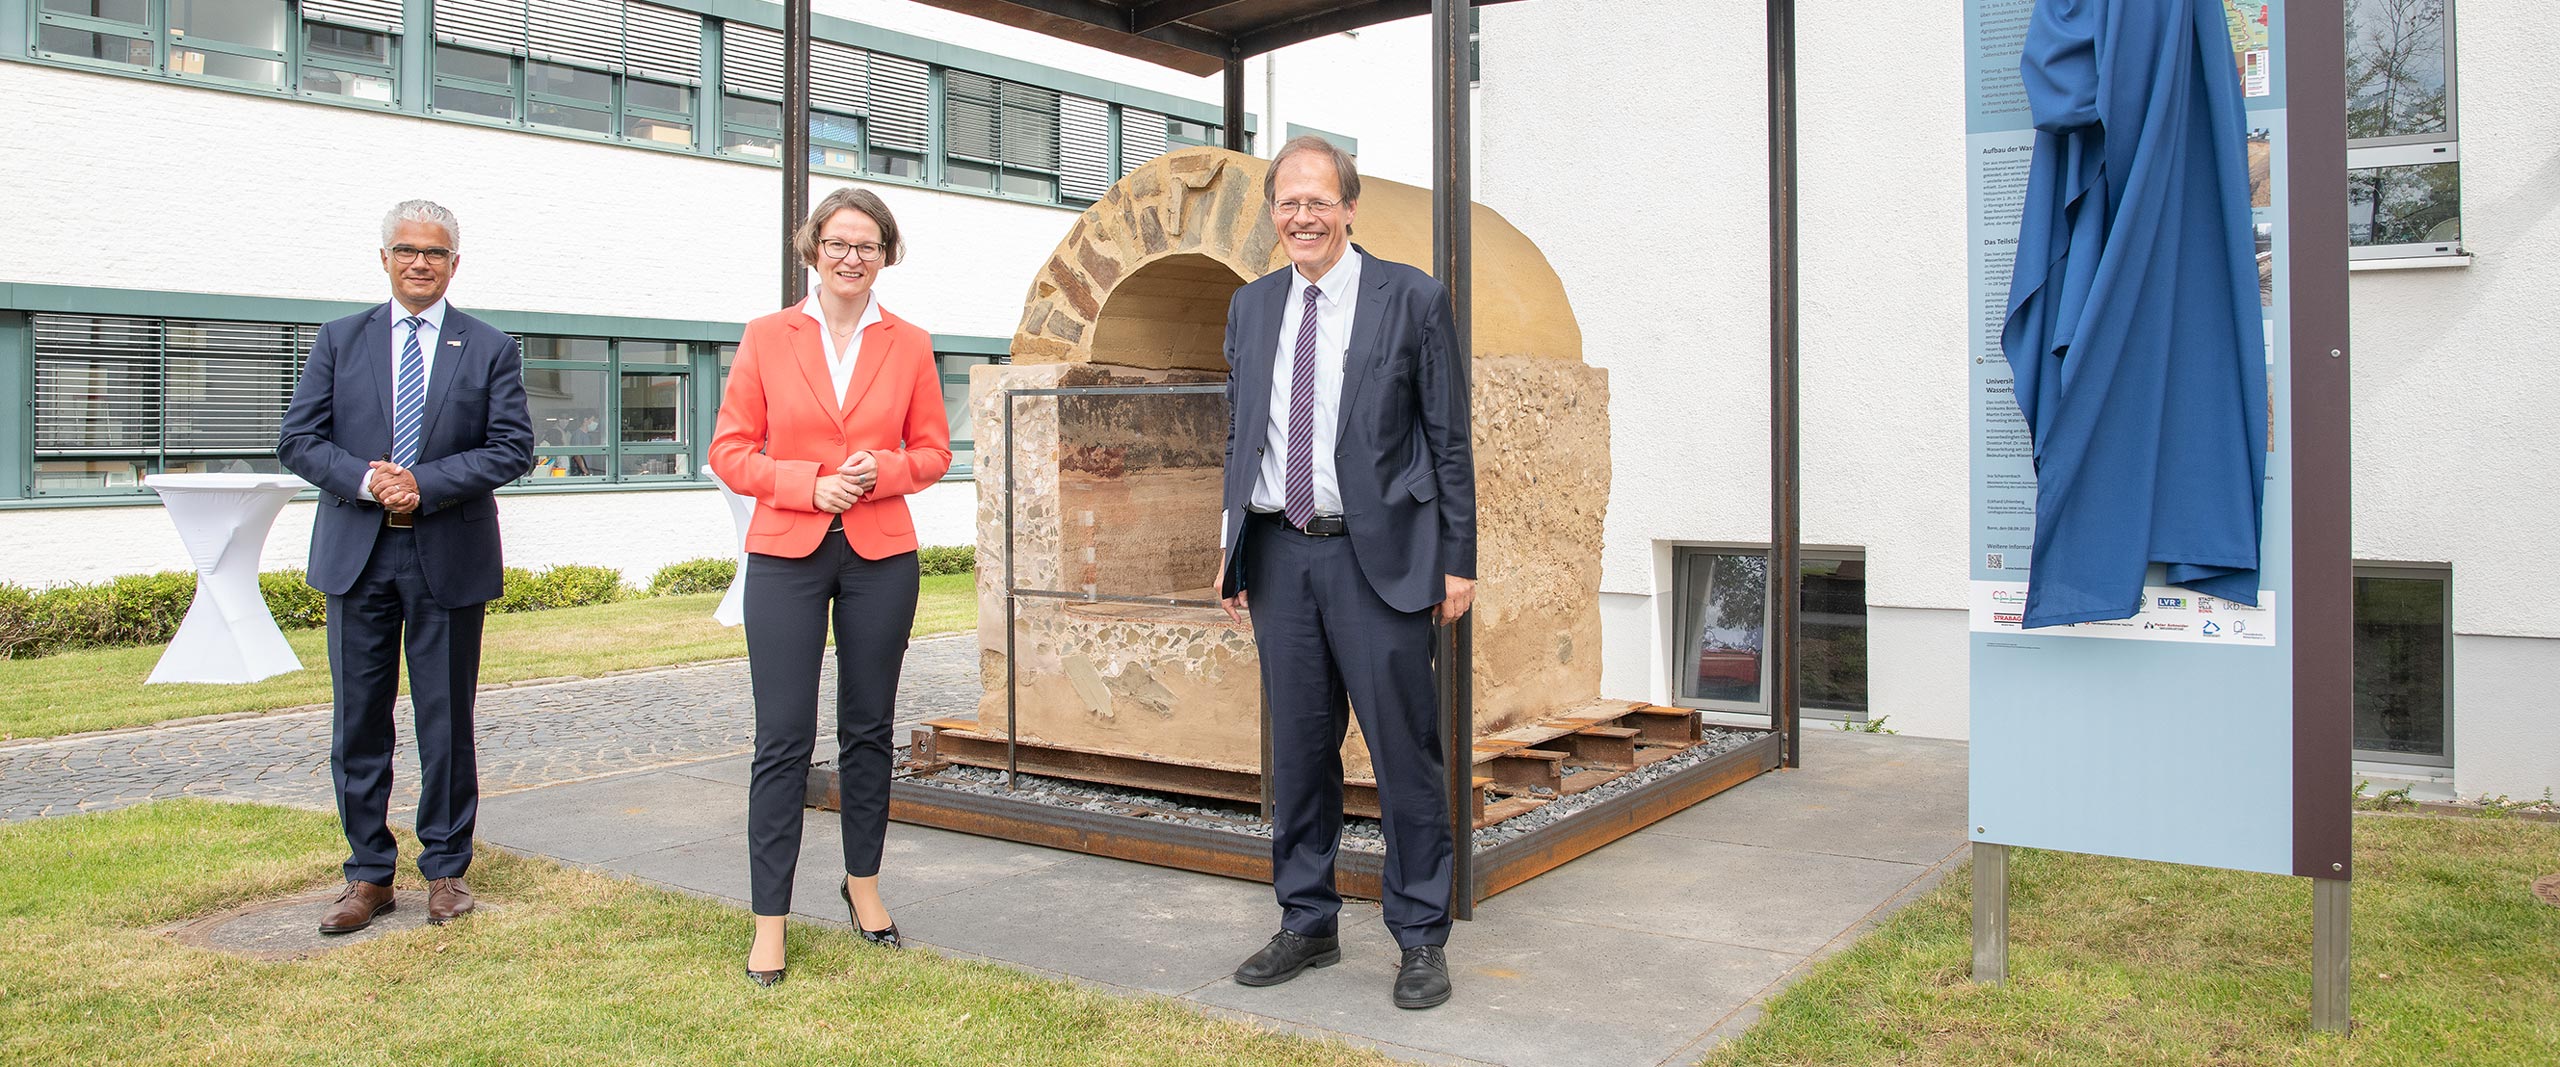 Landesregierung Nordrhein-Westfalen fördert mit Heimatfonds historische Wasserleitung am Universitätsklinikum Bonn (UKB)